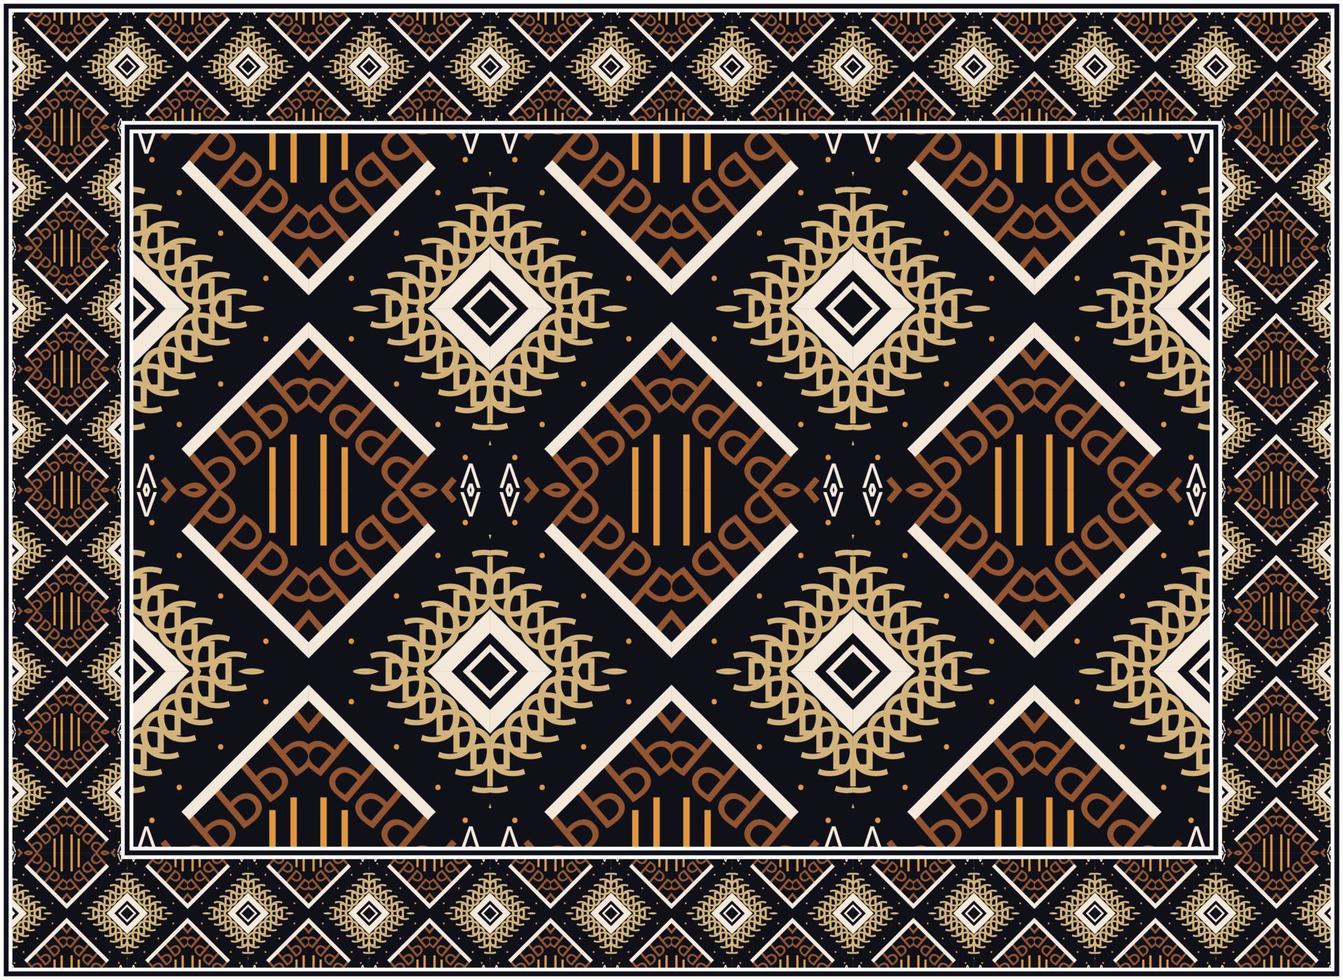 antiguo persa alfombra, escandinavo persa alfombra moderno africano étnico azteca estilo diseño para impresión tela alfombras, toallas, pañuelos, bufandas alfombra, vector